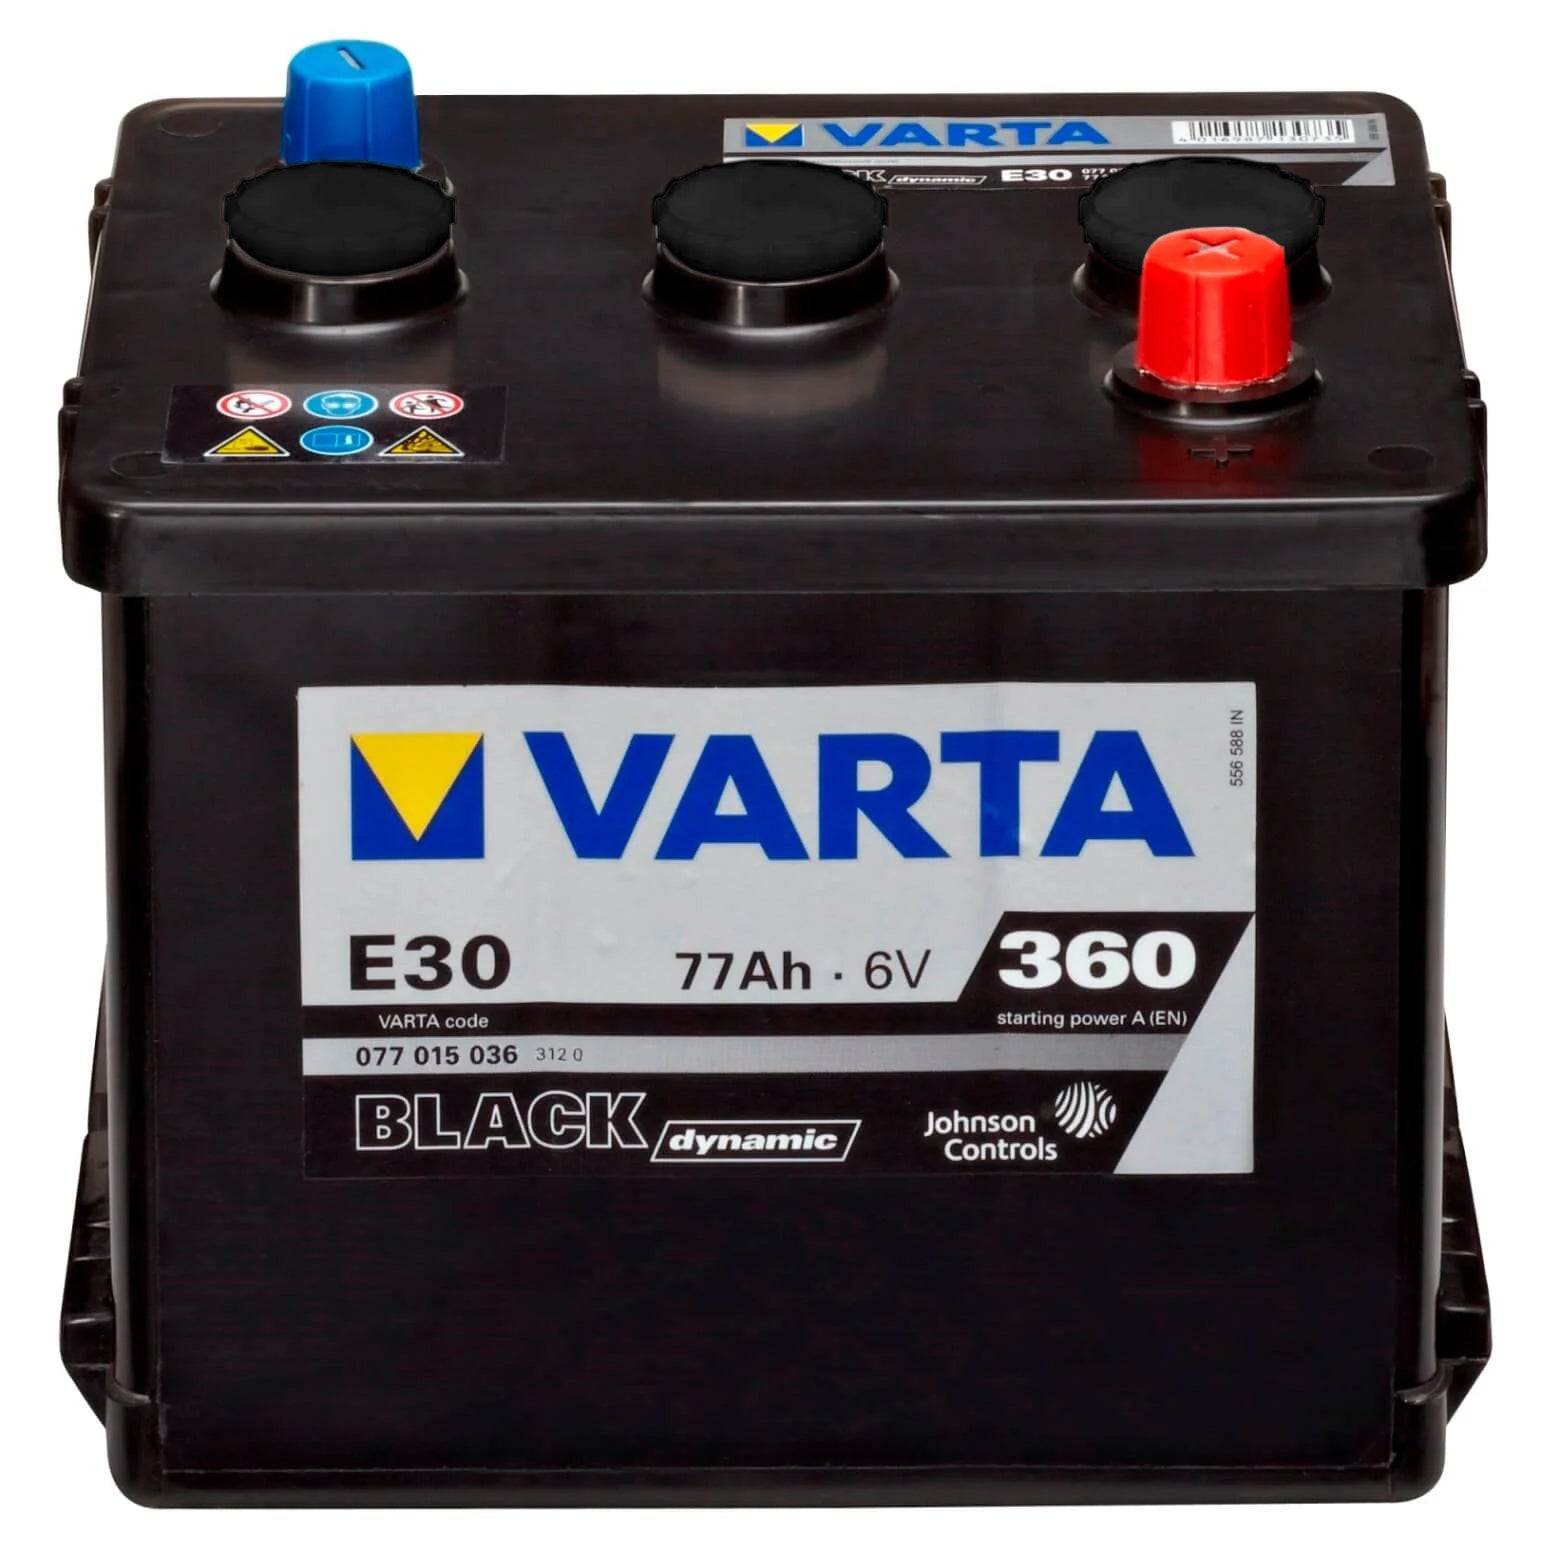 http://www.batterie-industrie-germany.de/cdn/shop/files/Oldtimer-Autobatterie-Varta-Black-Dynamic-E30-6V-77Ah-0770150363120-Front.jpg?v=1700752232